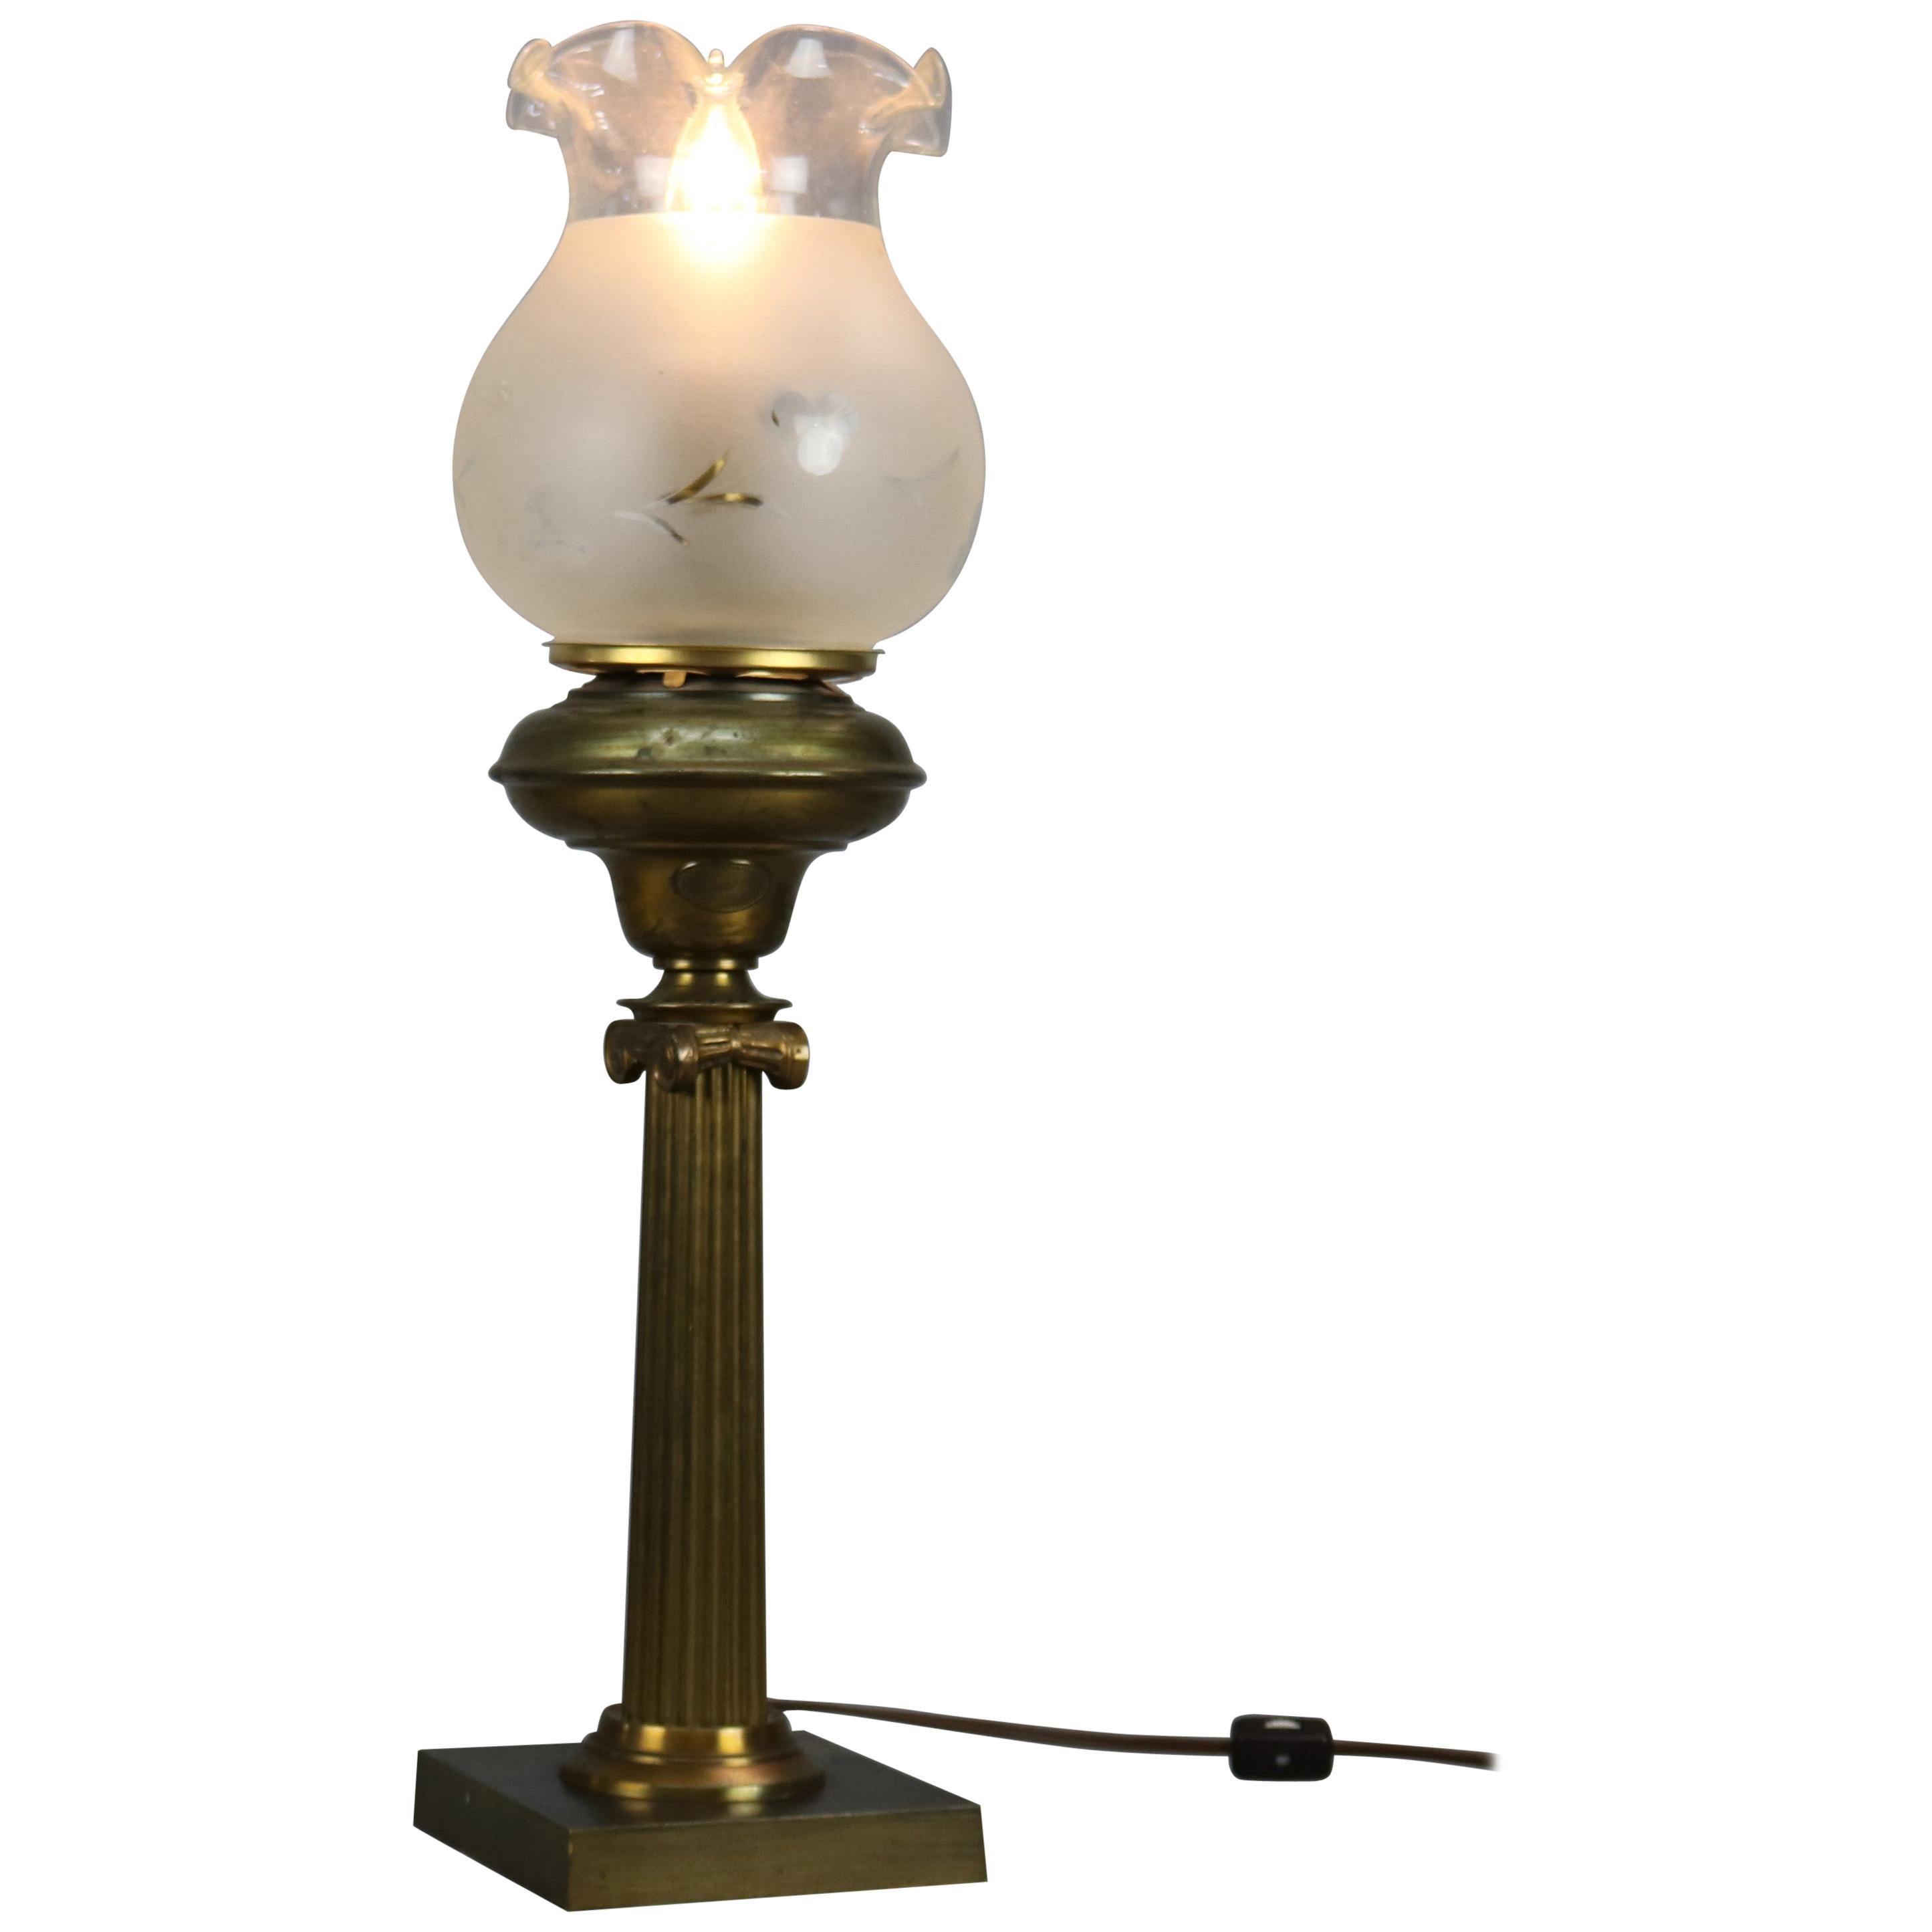 Antique Classical Cornelius & Co. Solar Lamp, circa 1890